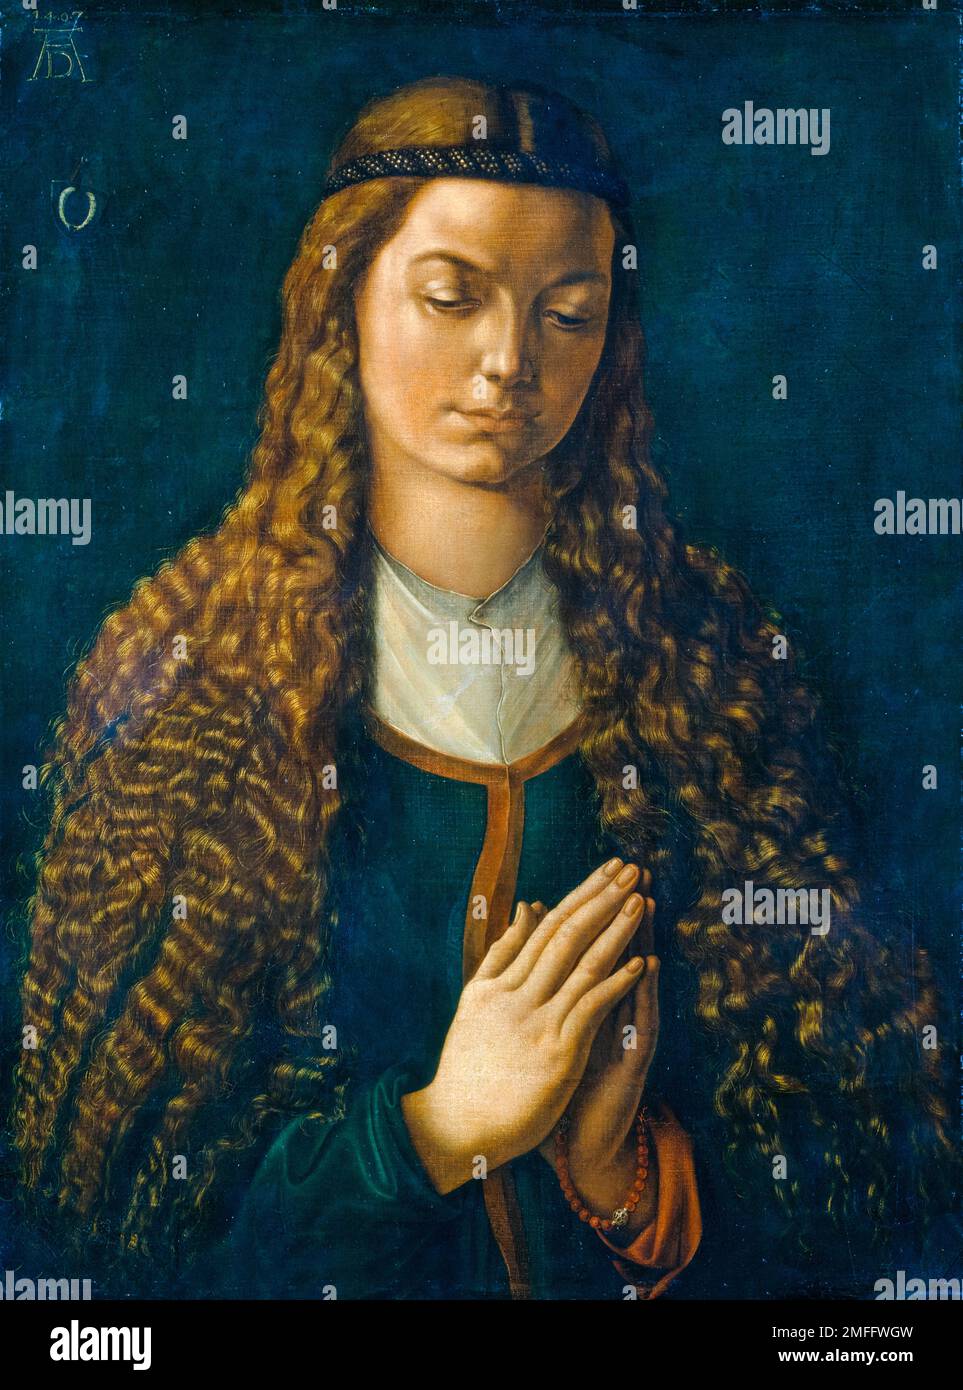 Albrecht Durer, Portrait d'une jeune femme avec ses cheveux en bas, peinture aquarelle sur toile, 1497 Banque D'Images